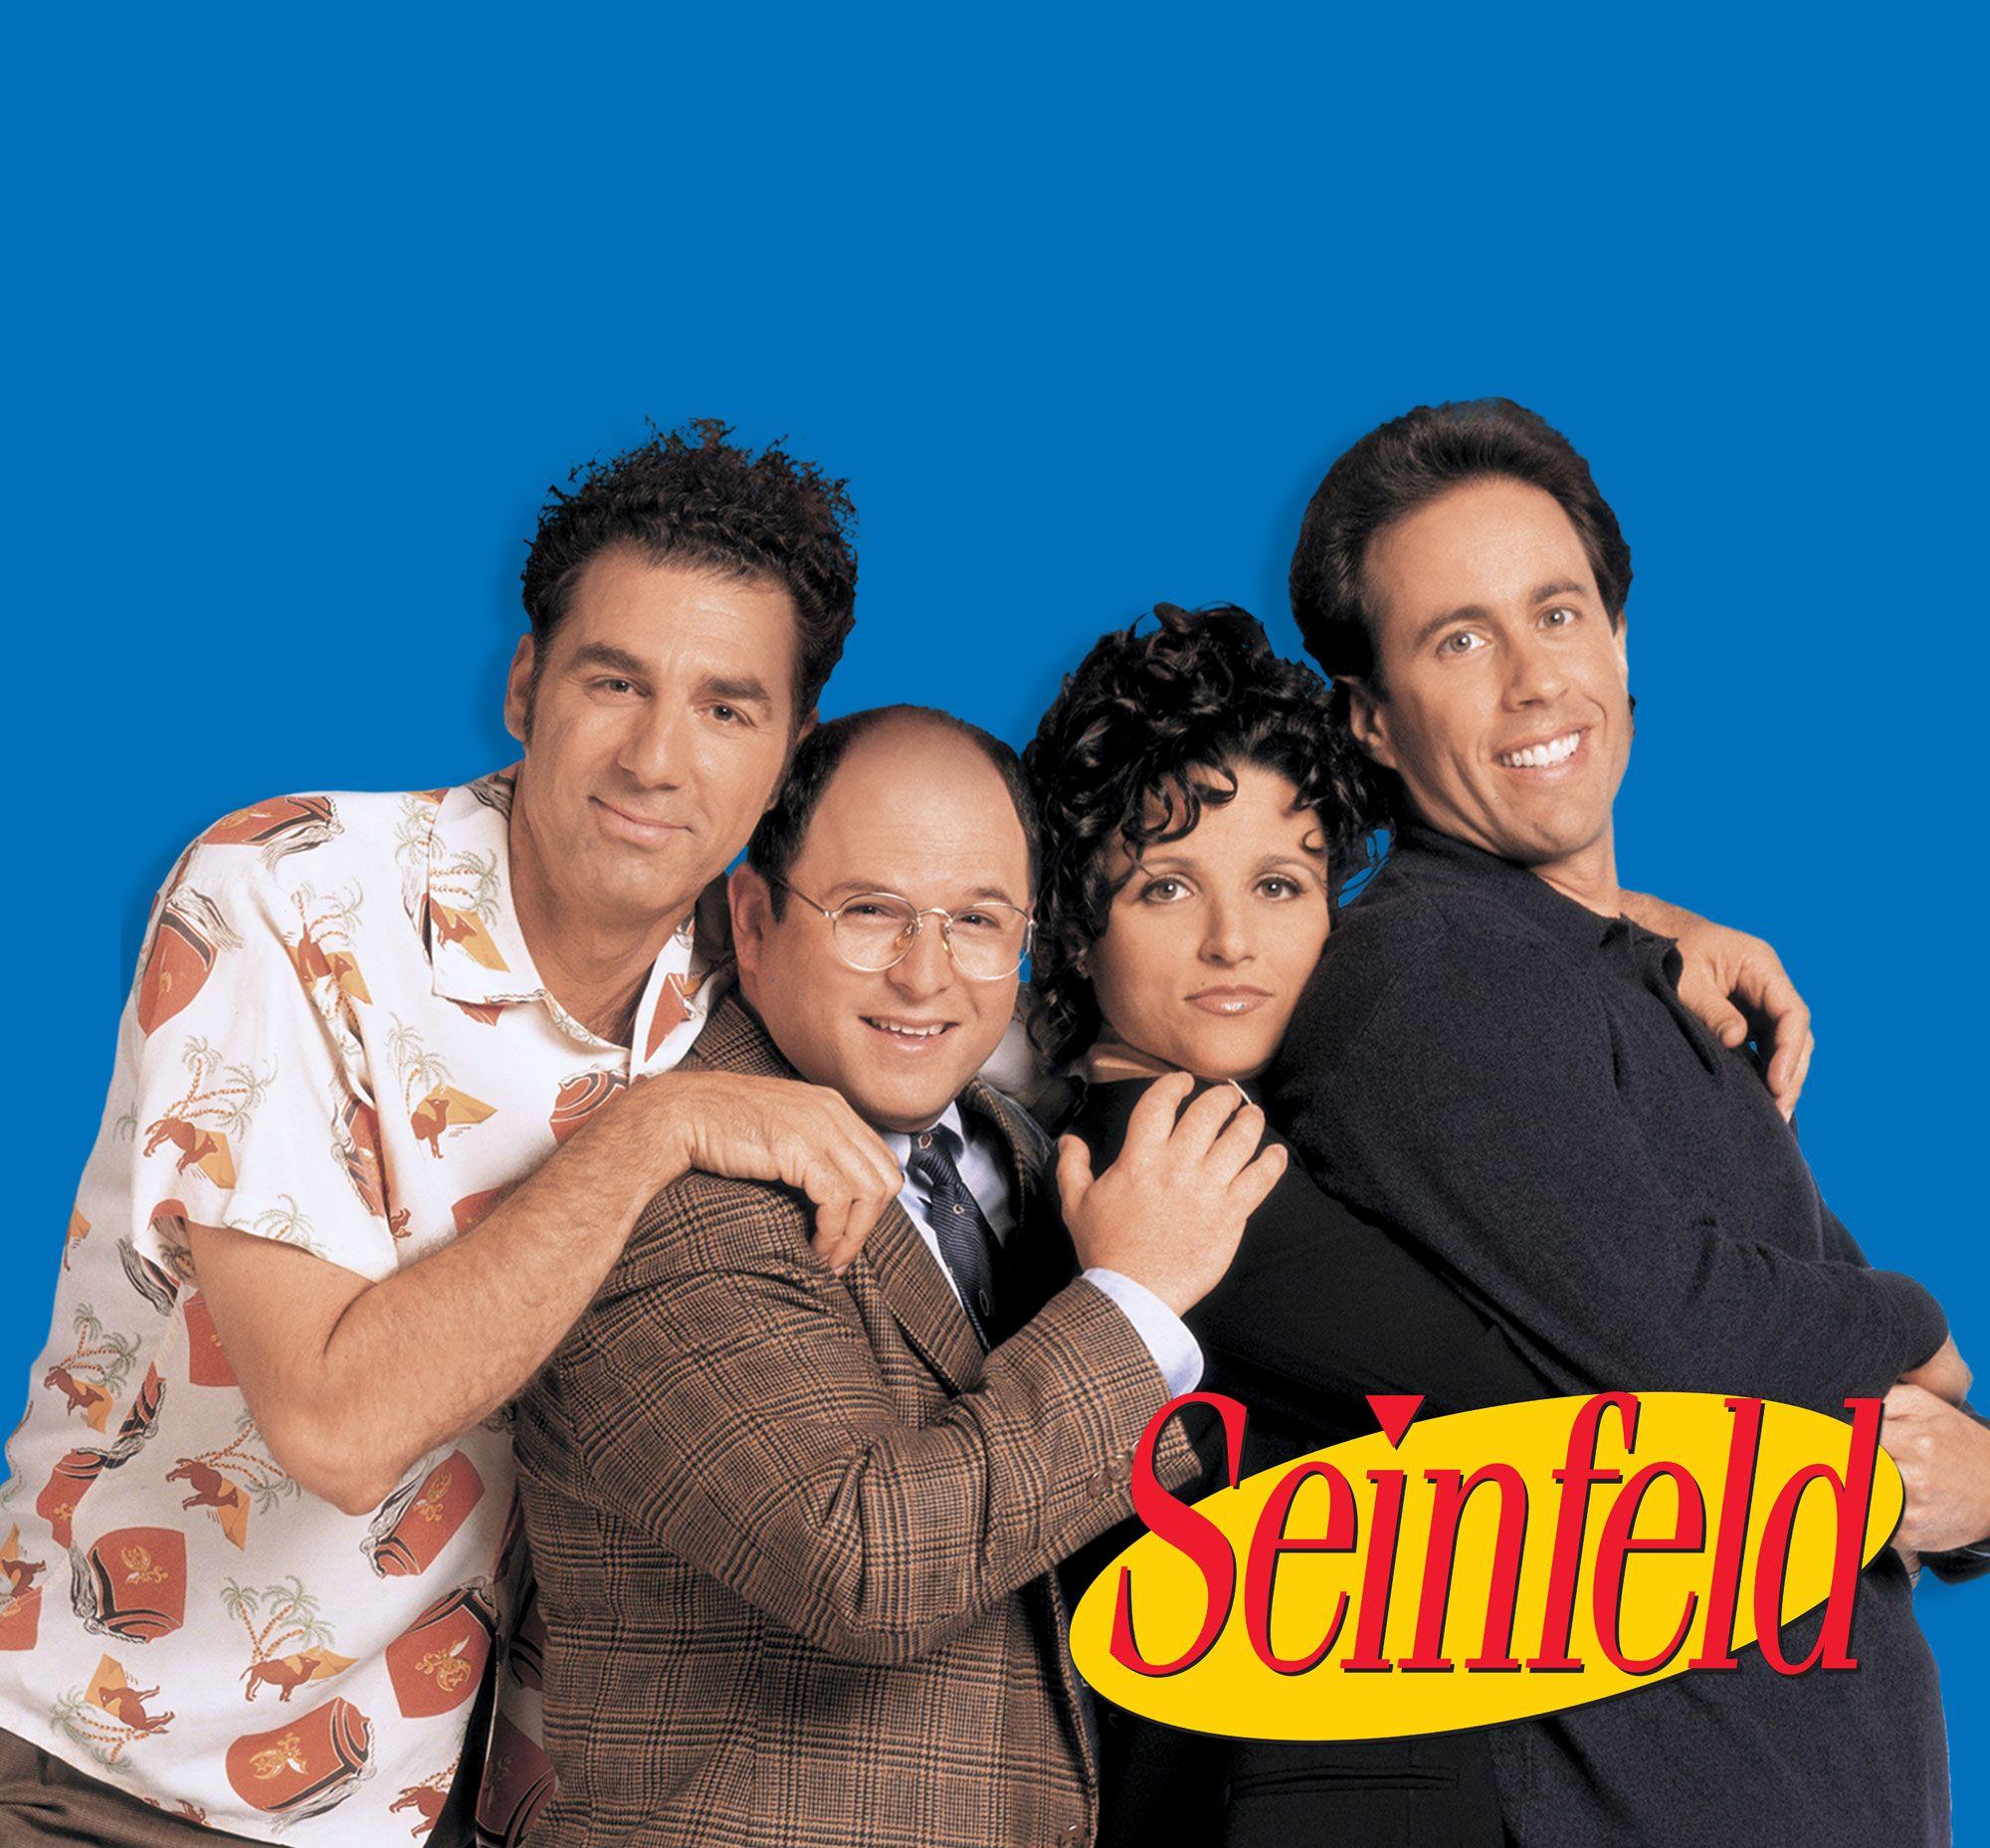 2048x1350px Seinfeld 604.92 KB